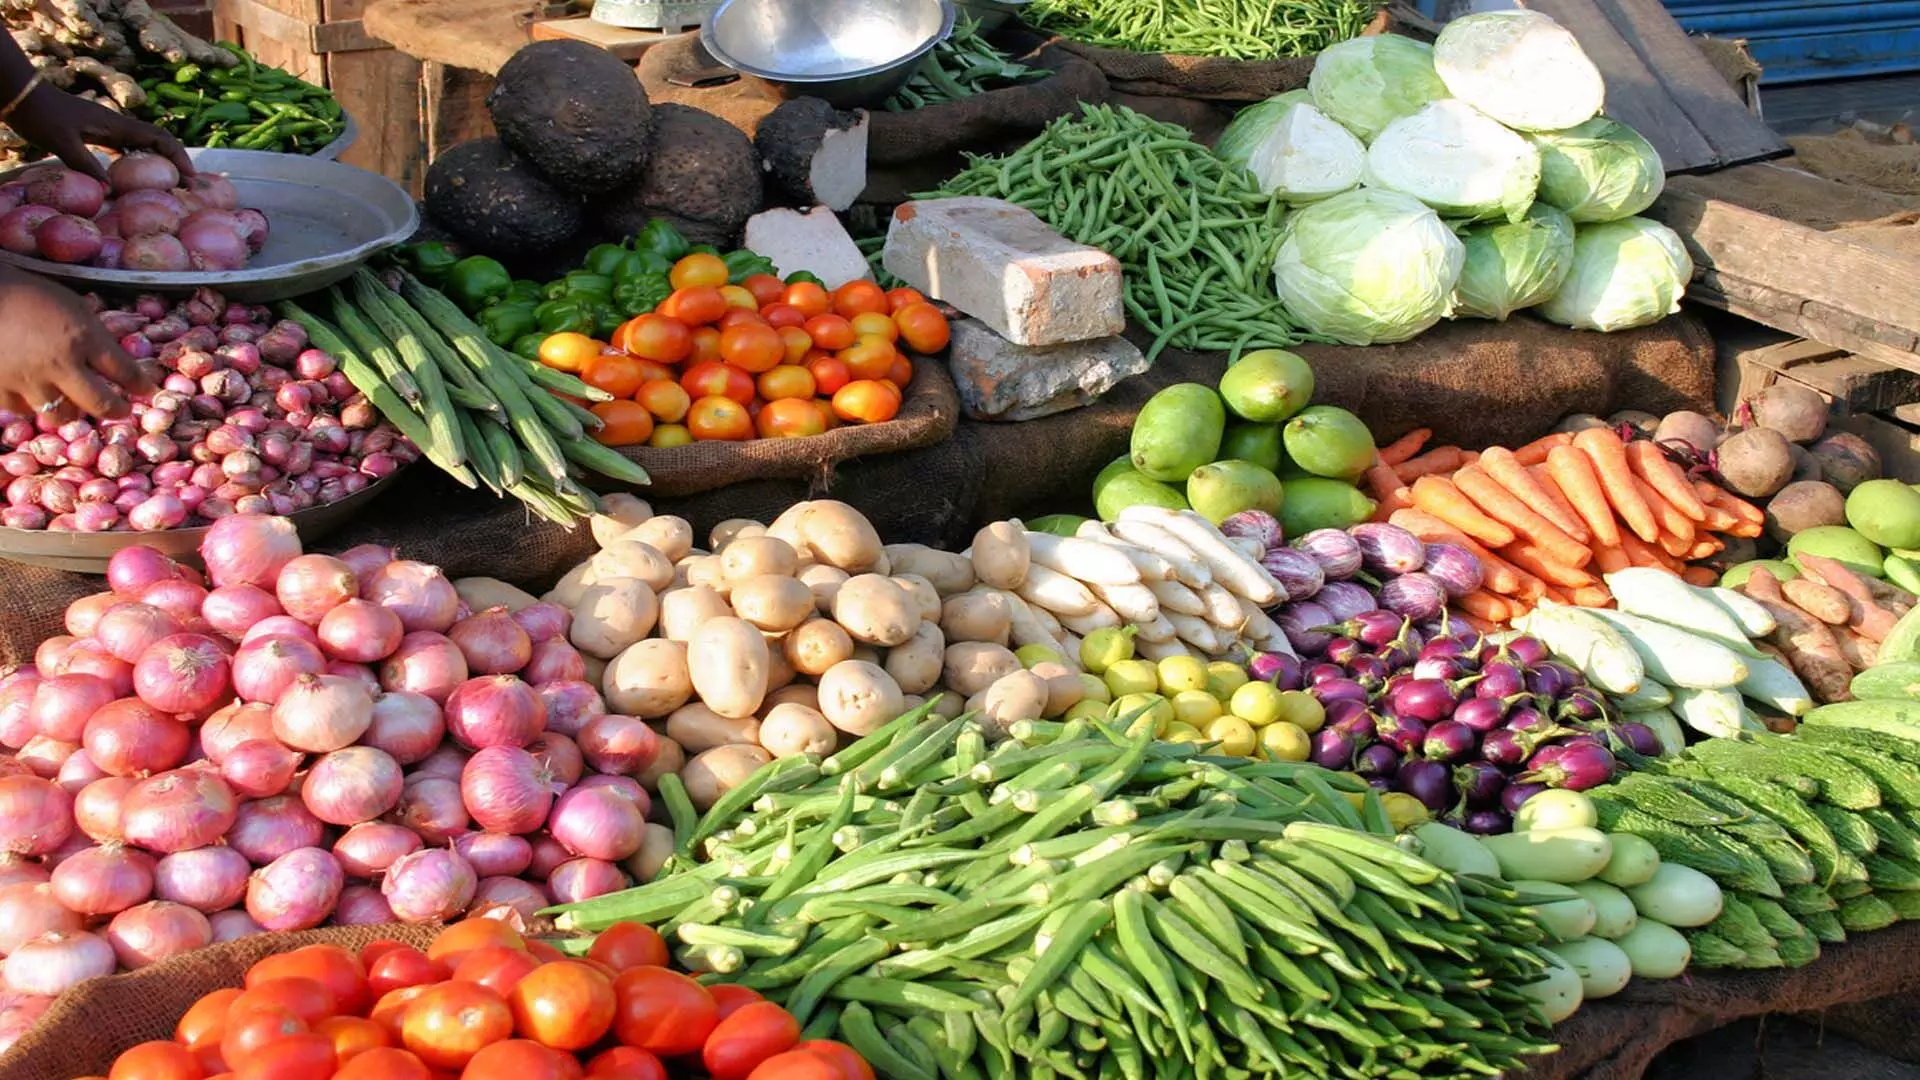 Delhi News: बर्दवान में जिला परिषद ने रियायती दरों पर सब्जियां बेचीं